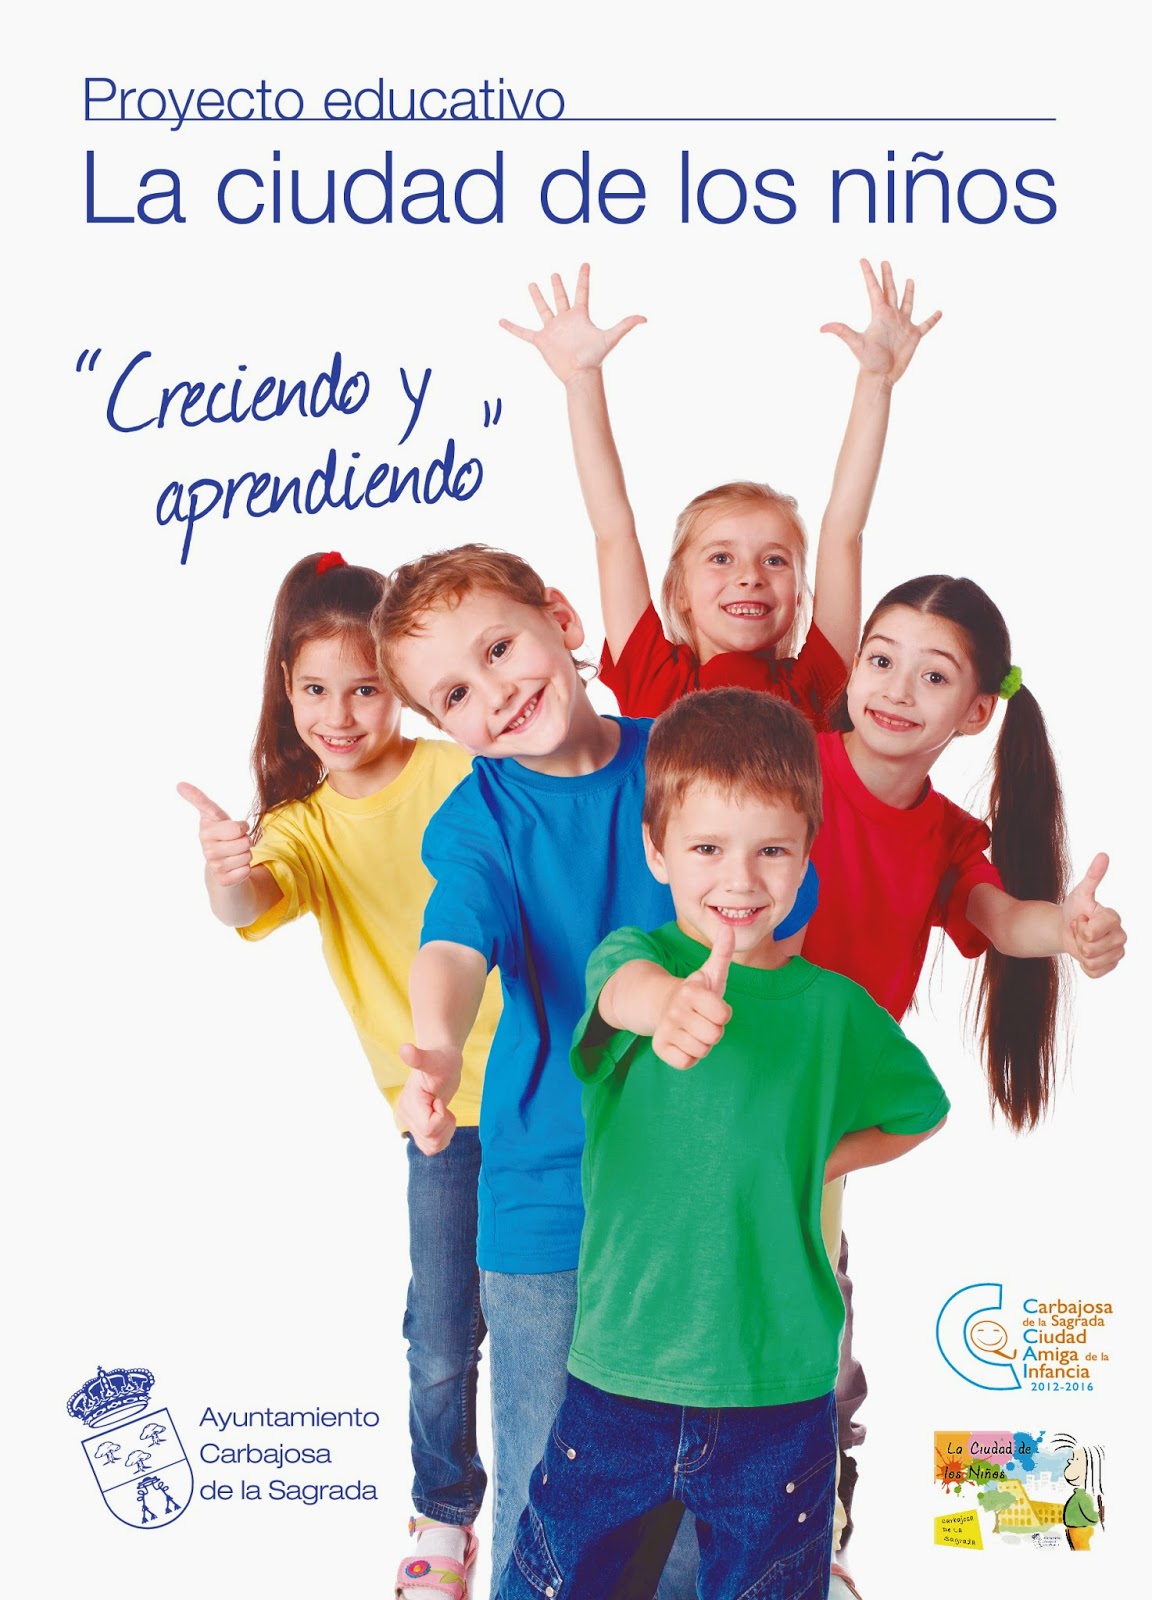 Carbajosa: Primera Jornada Provincial de Educación, Participación y Derechos de la Infancia 28 de octubre 2014